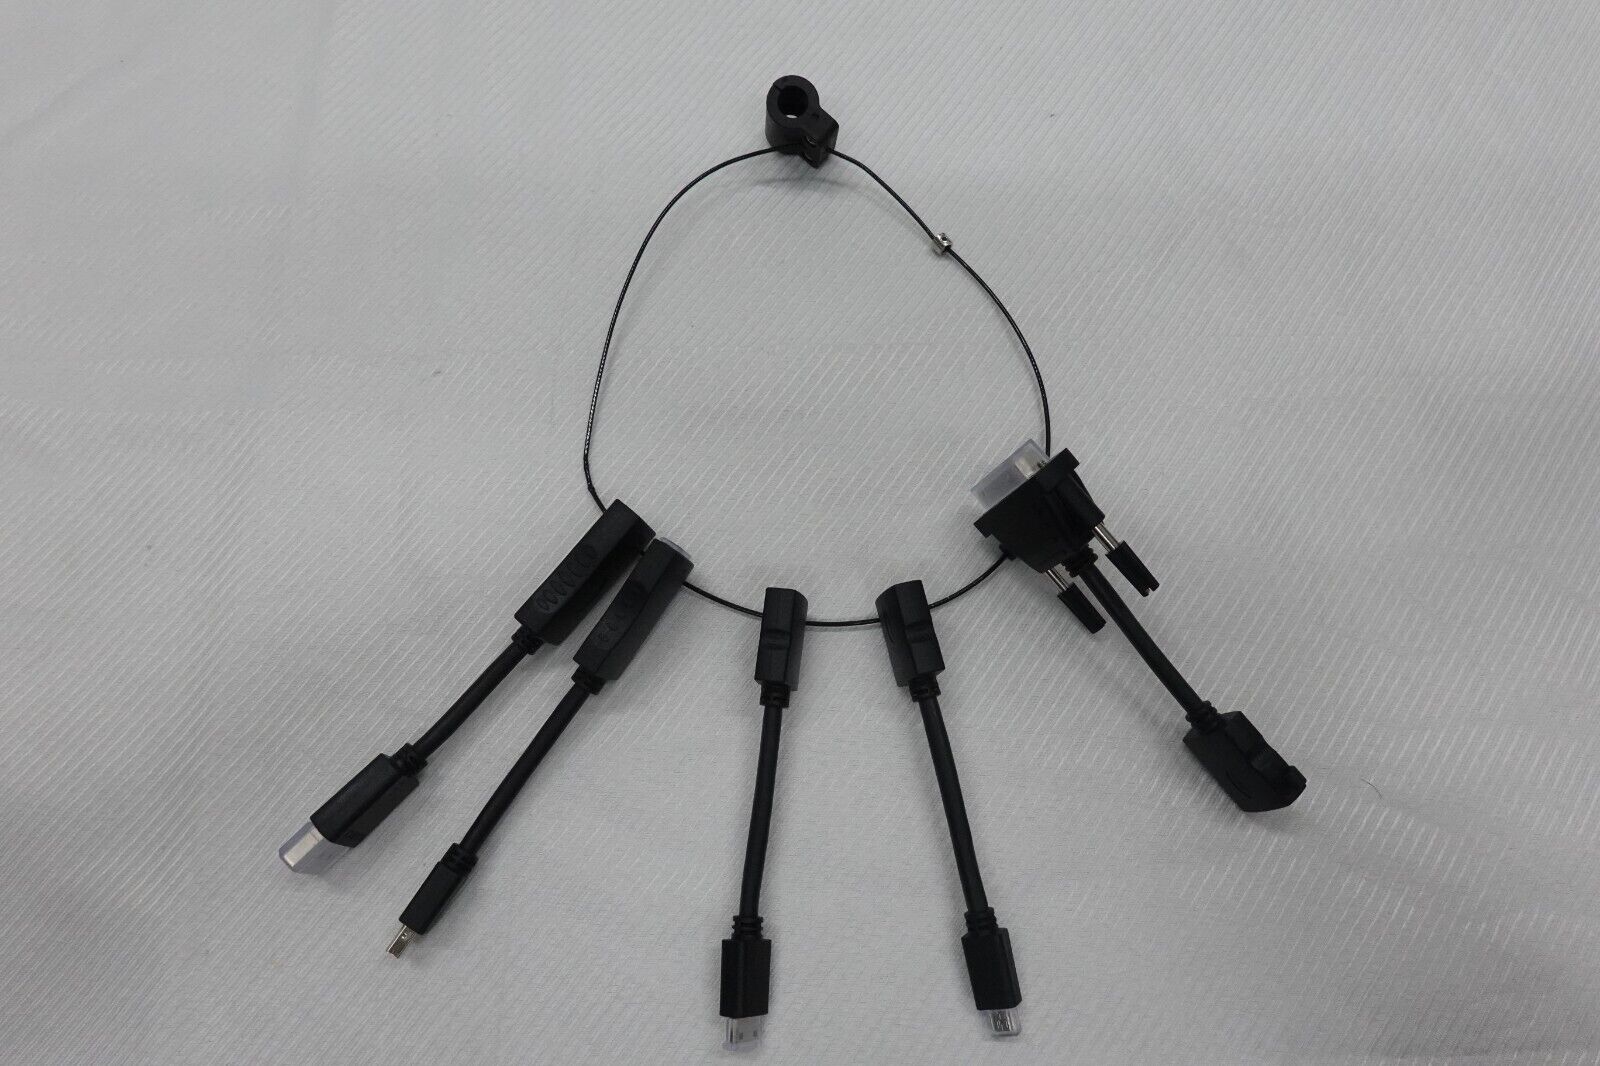 Liberty AV Solutions Digitalinx Dongle Adapter Ring, Black, DL-ADR